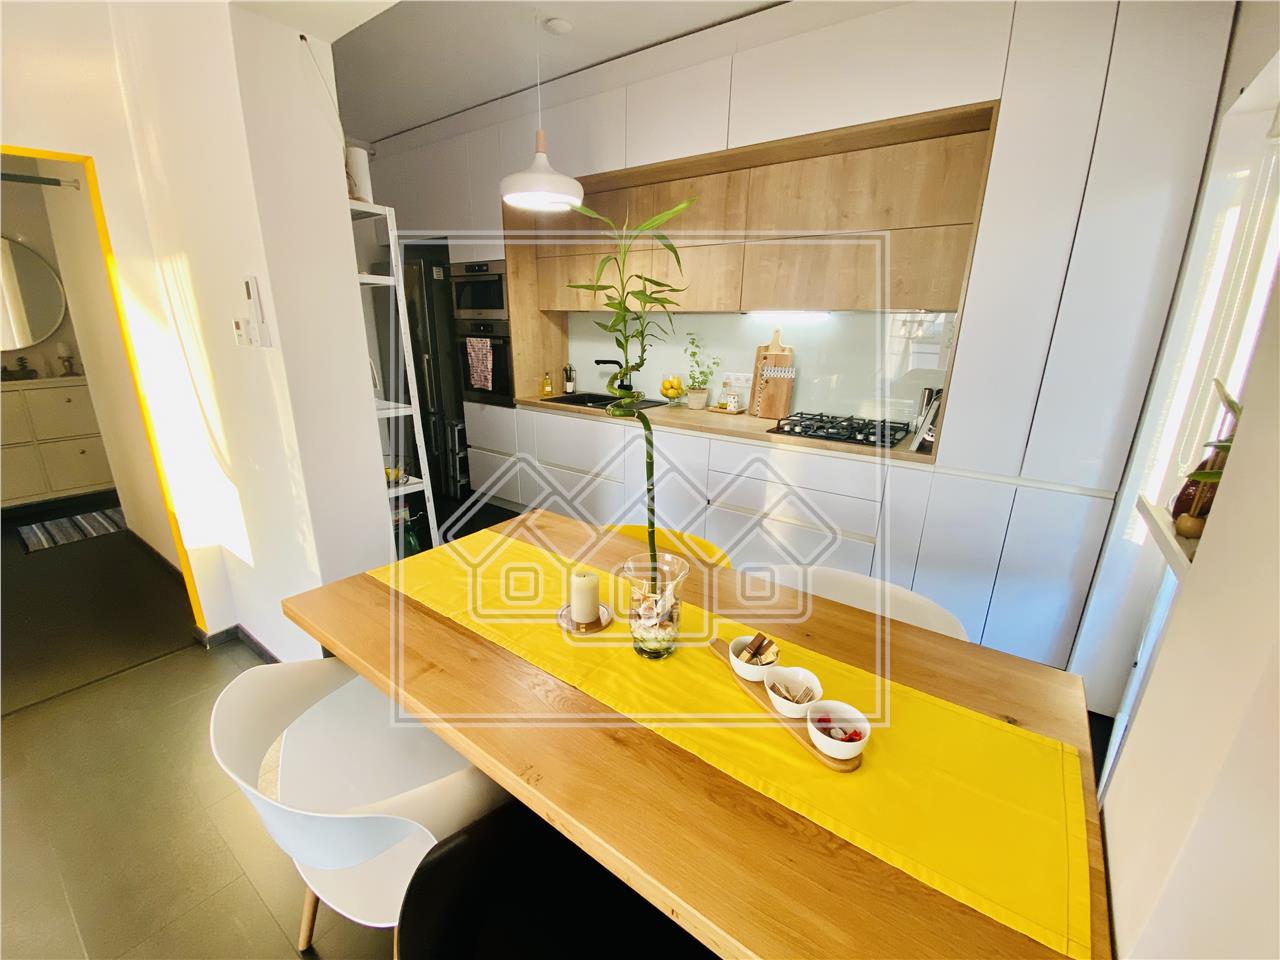 Wohnung zu verkaufen in Sibiu - 2 Zimmer, Balkon und Terrasse, Luxusko